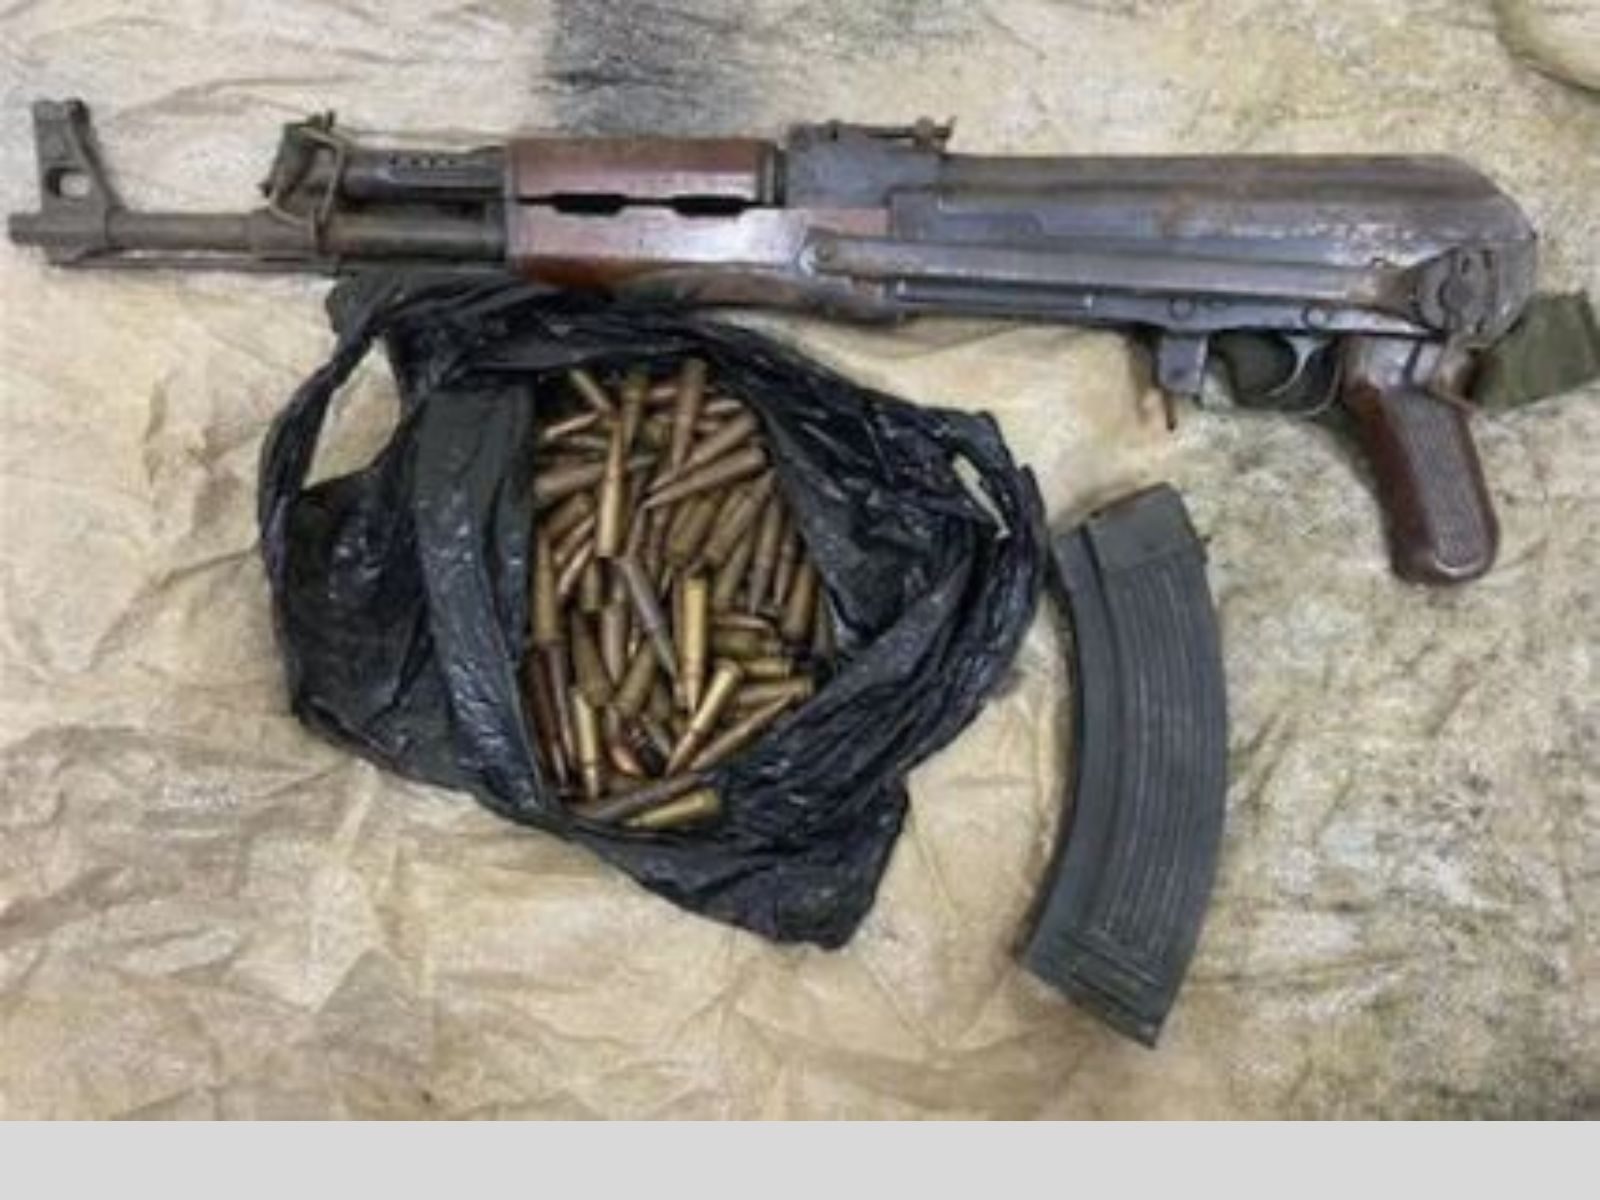 ਮੋਹਾਲੀ RPG  ਹਮਲੇ ਦੇ 2 ਹੋਰ ਦੋਸ਼ੀ AK-56 ਅਸਾਲਟ ਰਾਈਫਲ ਸਮੇਤ ਗ੍ਰਿਫਤਾਰ